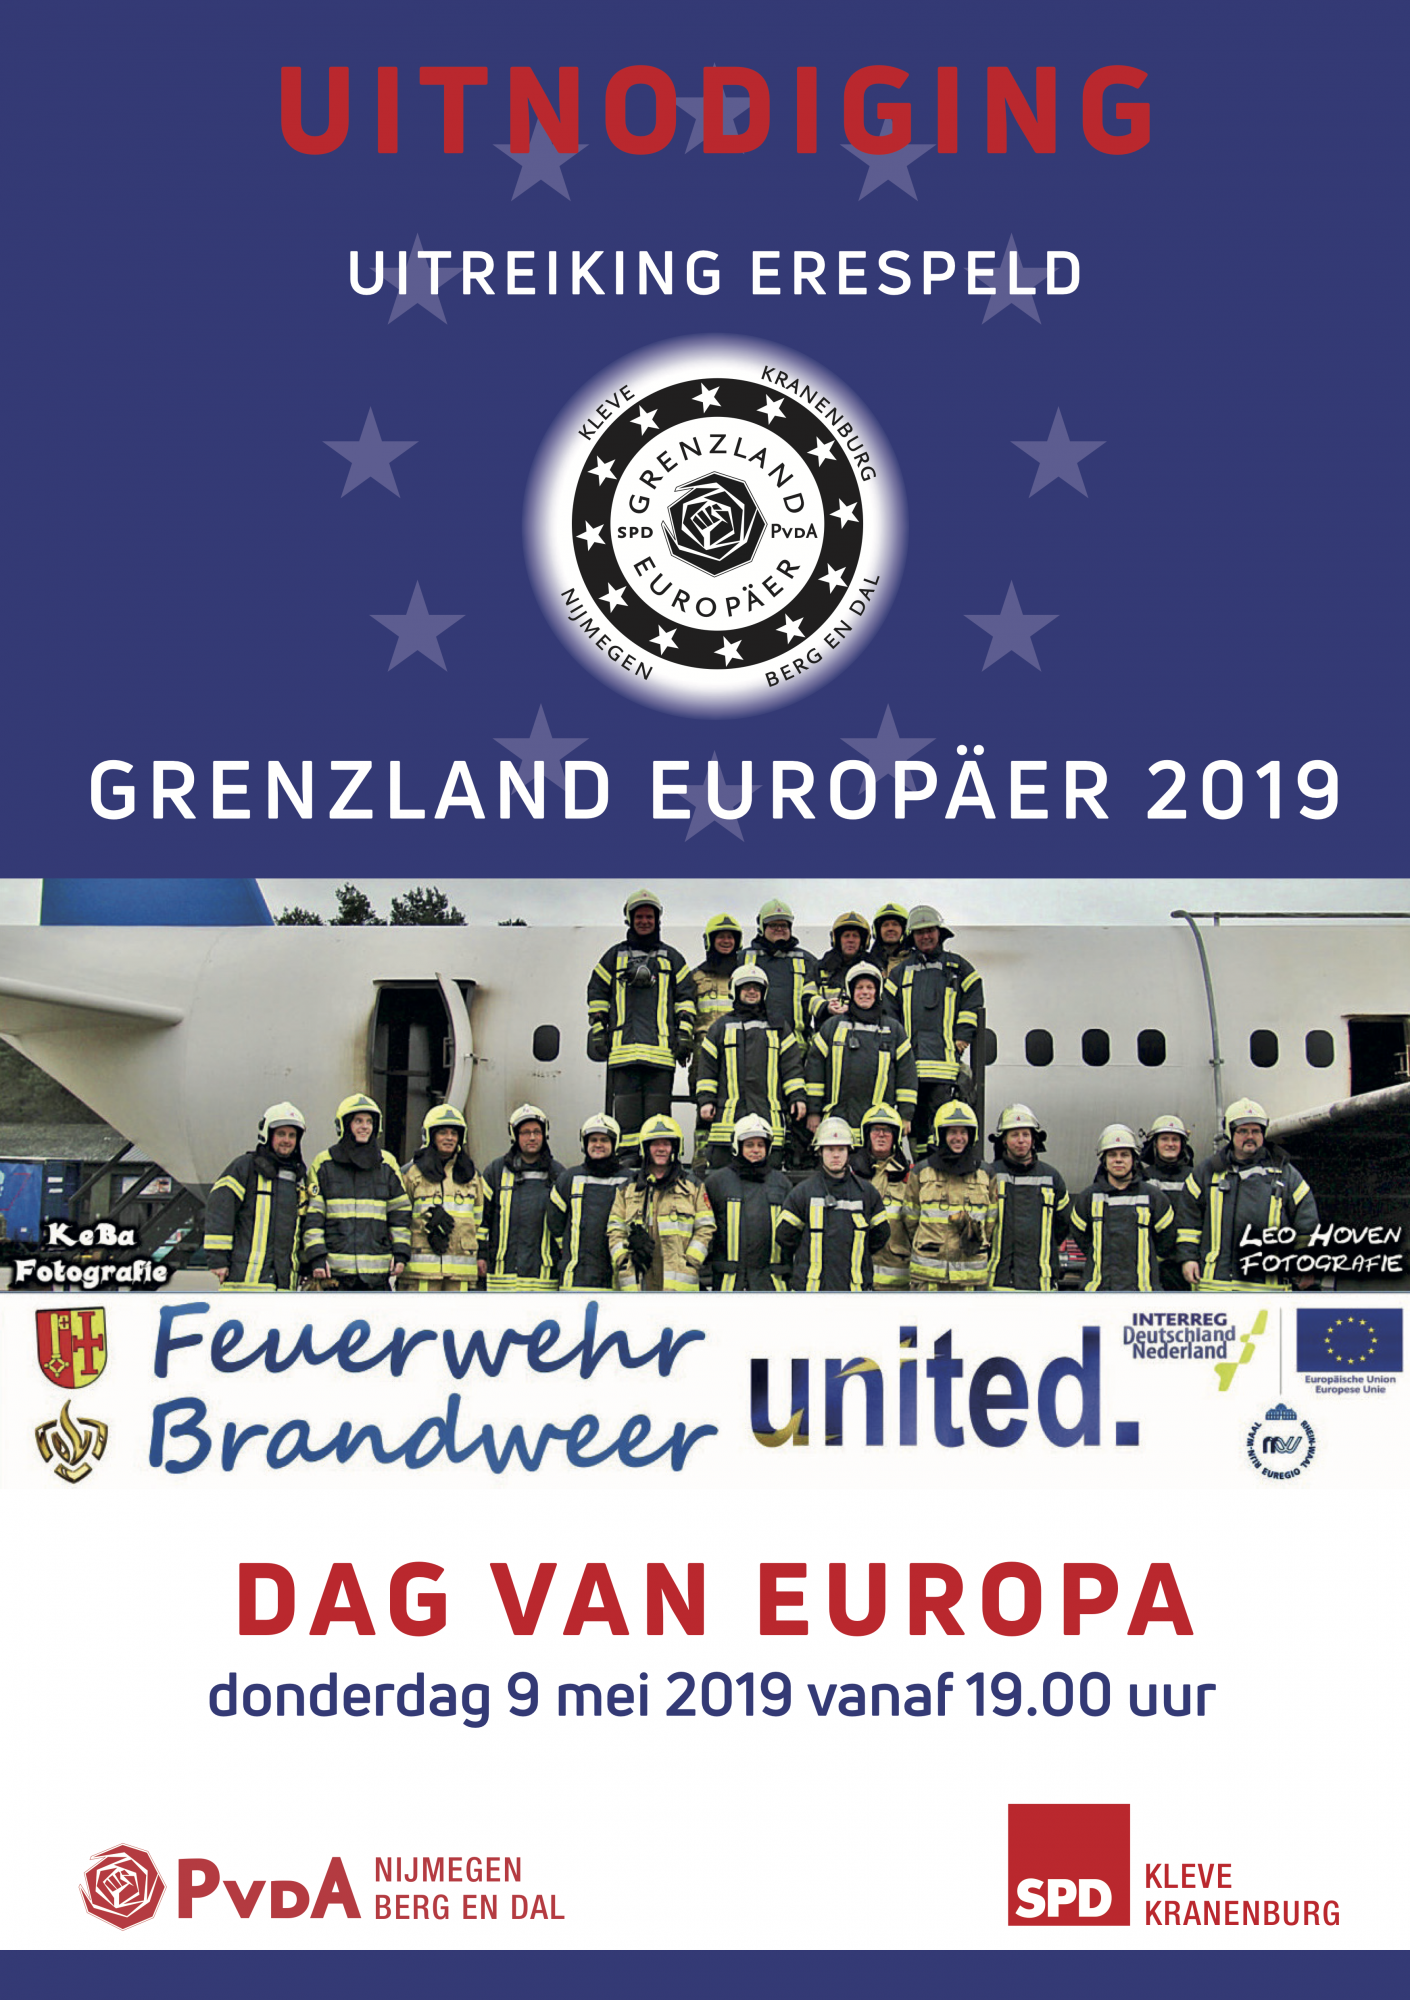 https://bergendal.pvda.nl/nieuws/uitnodiging-dag-van-europa-9-mei-2019/